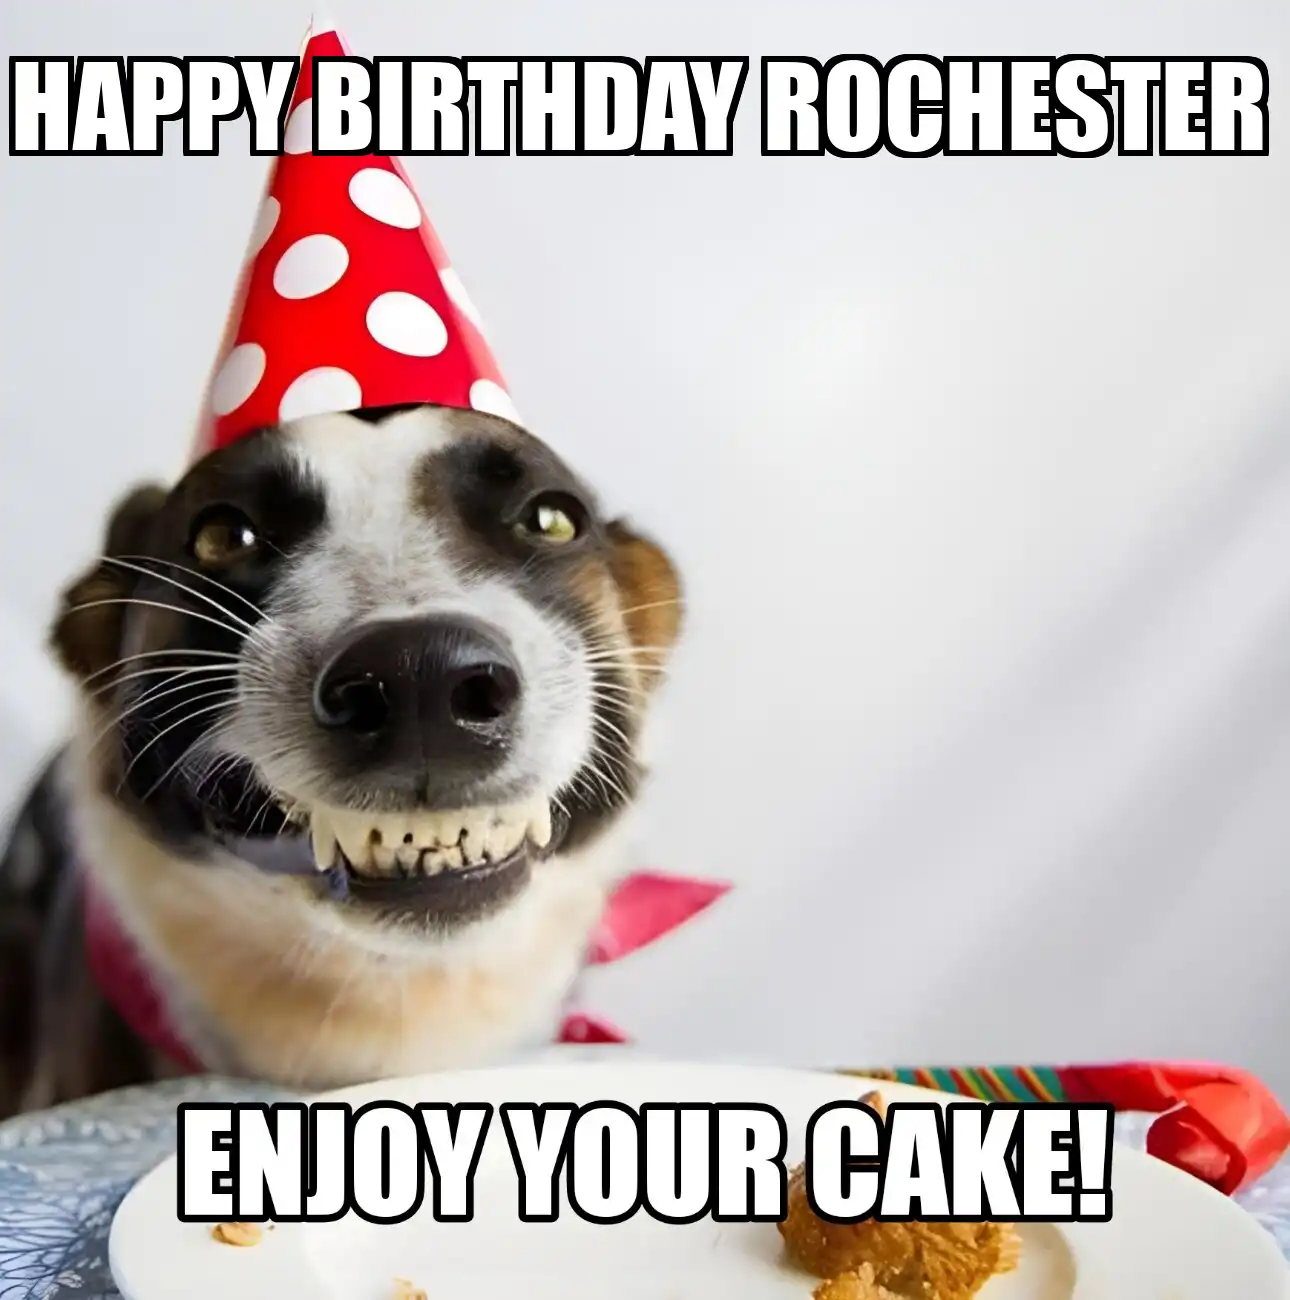 Happy Birthday Rochester Enjoy Your Cake Dog Meme